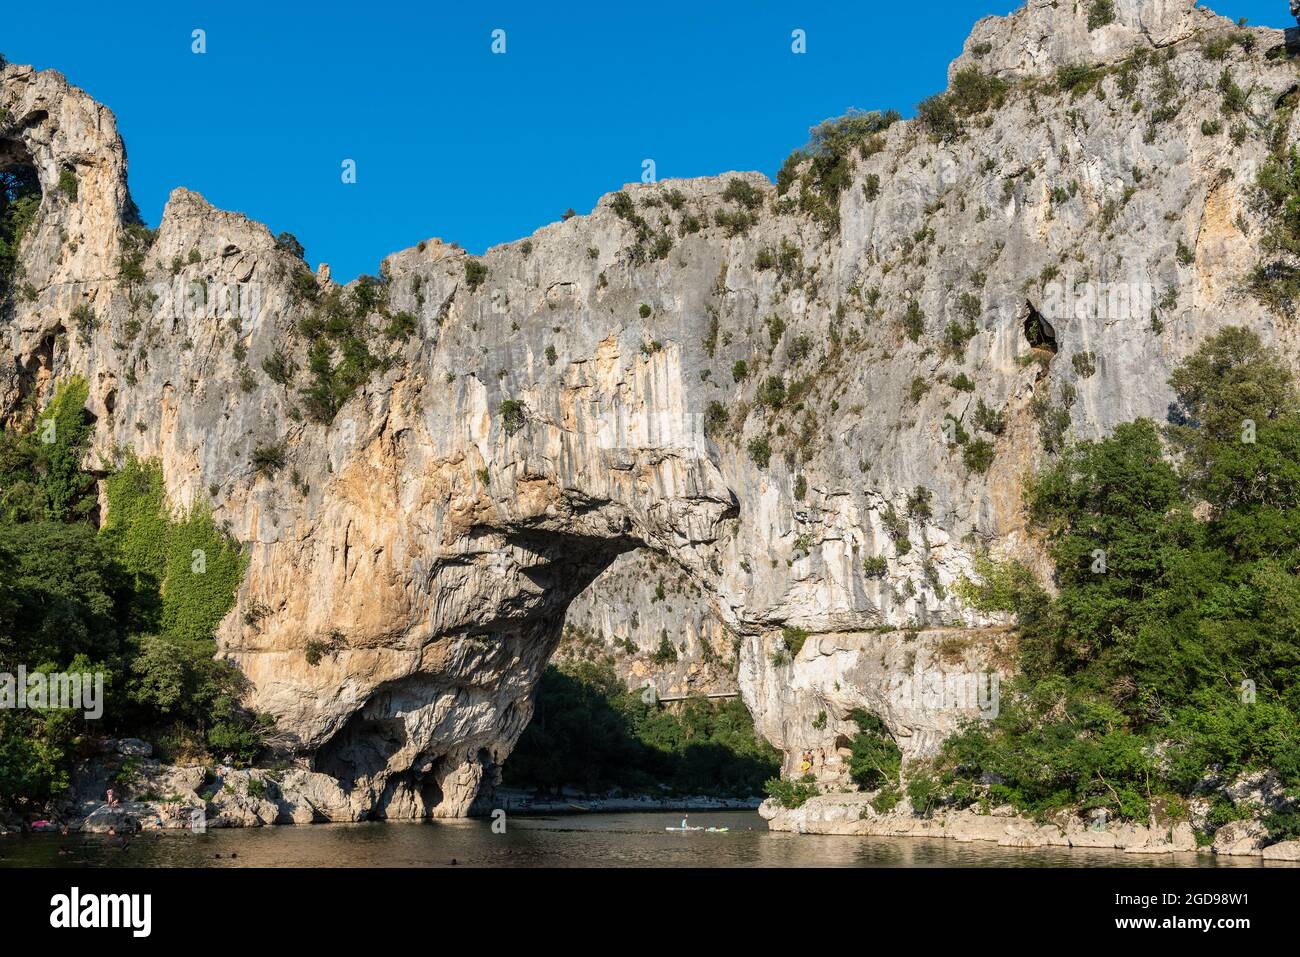 Le Pont d'Arc dans les Gorges de l'Ardèche, Vallon-Pont-d'Arc, France, été Banque D'Images